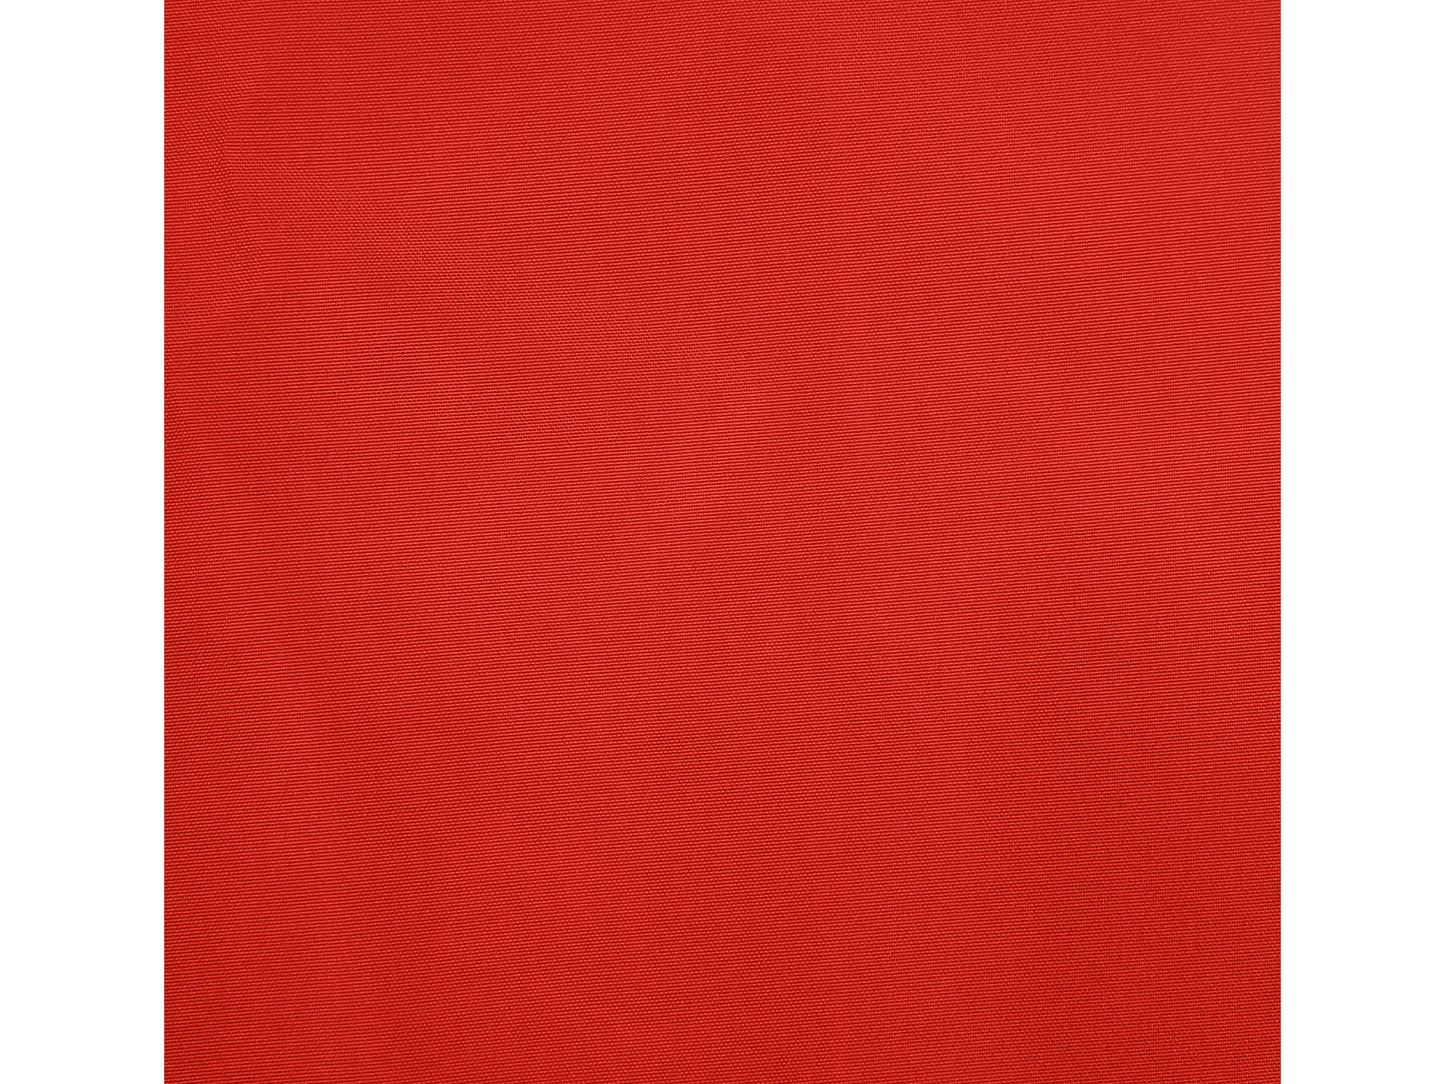 crimson red square patio umbrella, tilting 300 Series detail image CorLiving#color_ppu-crimson-red